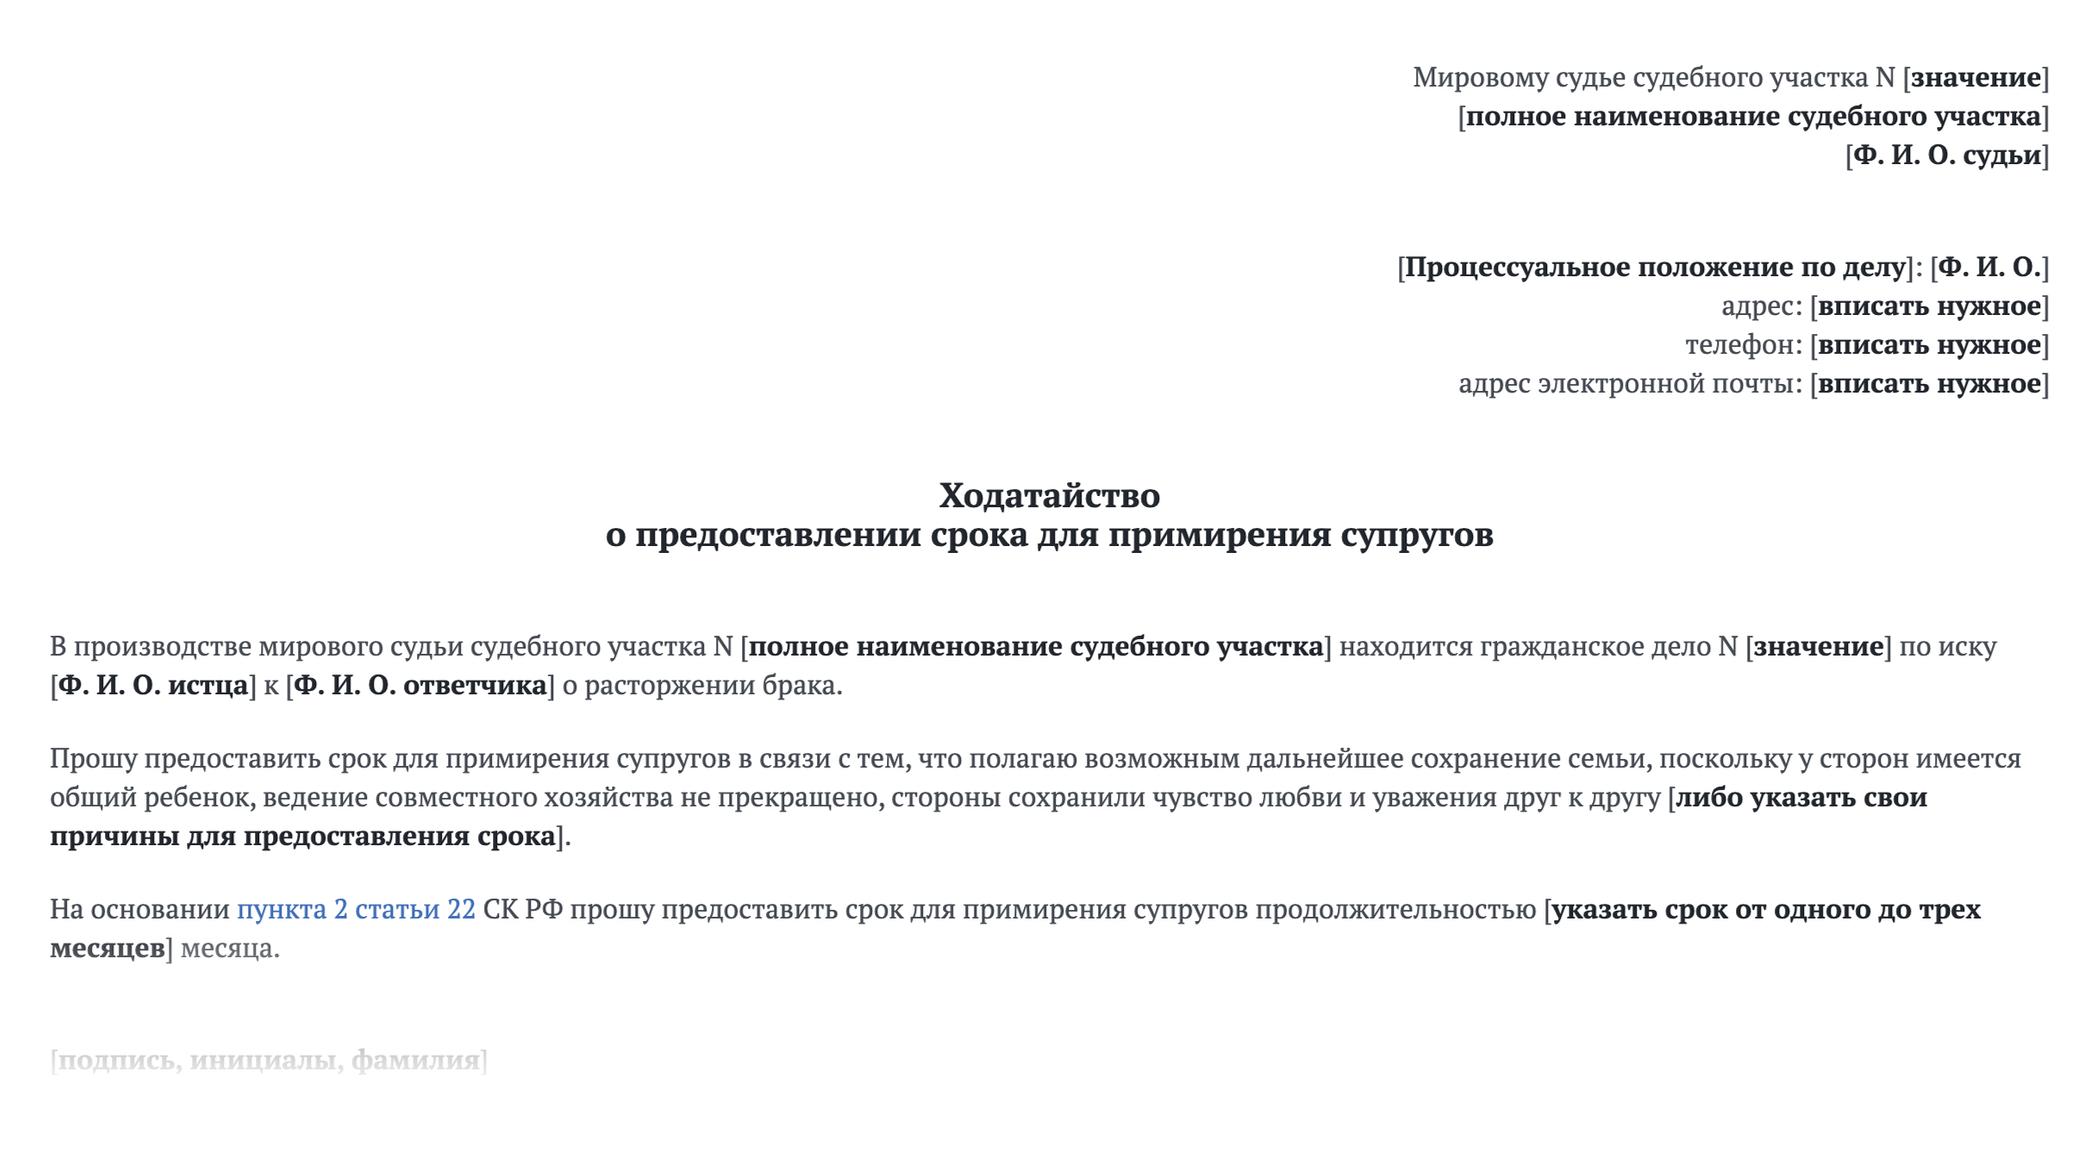 Ходатайство о предоставлении срока для примирения может выглядеть так. Источник: base.garant.ru